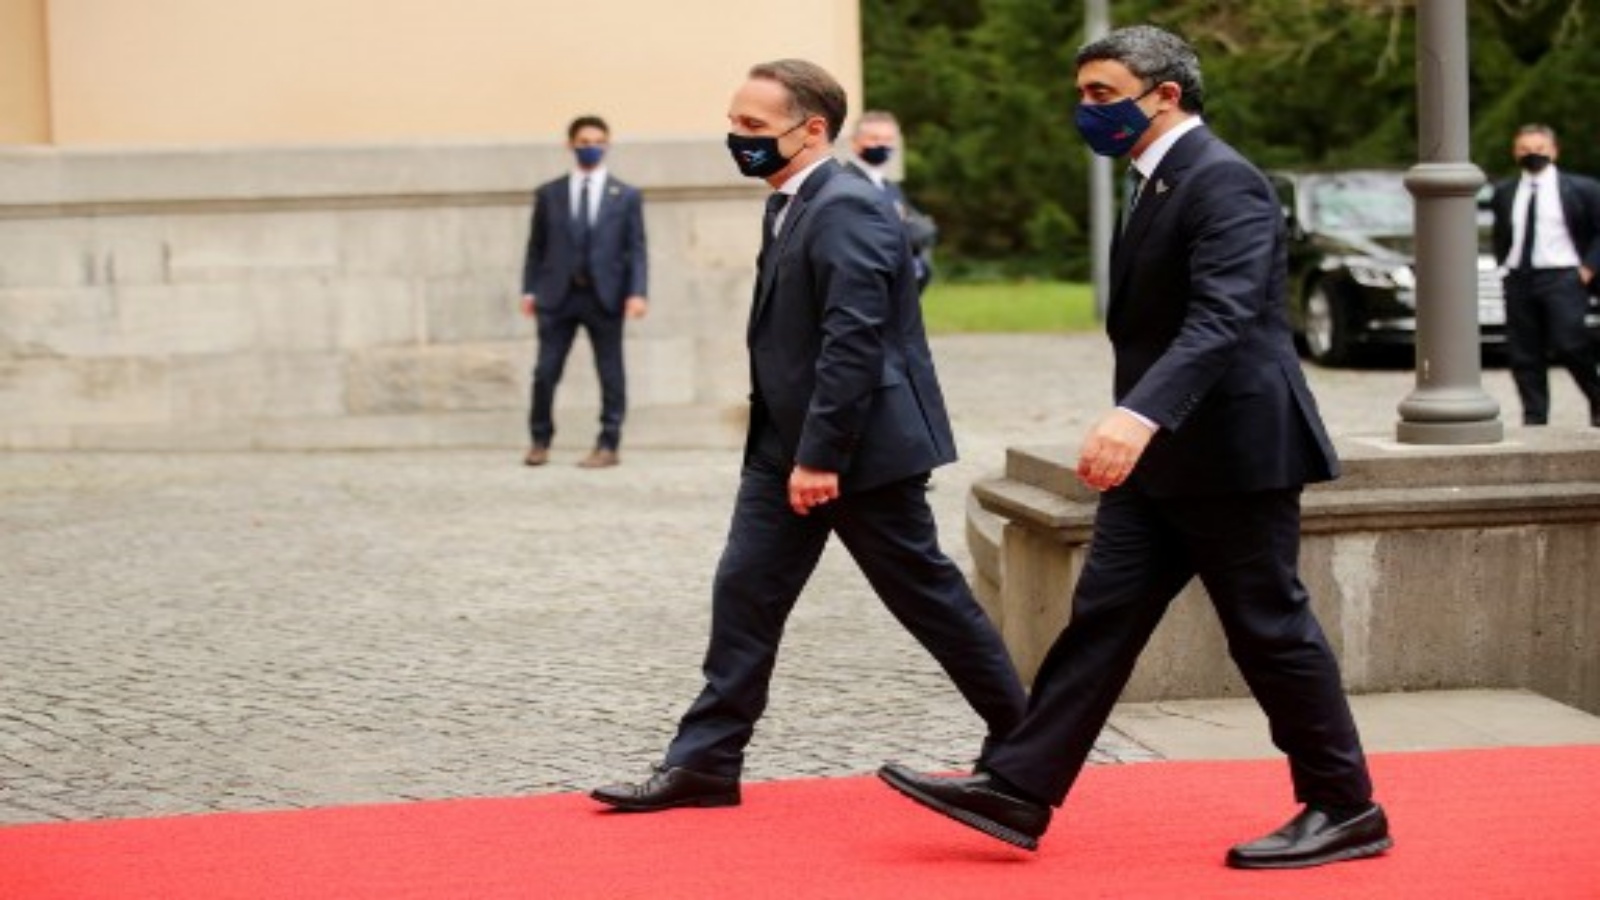 وزير الخارجية الألماني هايكو ماس (إلى اليمين) ووزير الخارجية الإماراتي الشيخ عبد الله بن زايد آل نهيان يقفان عند مدخل فيلا بورسيج في برلين ، قبل اجتماع مع نظيرتهما الإسرائيلية في 6 أكتوبر 2020.